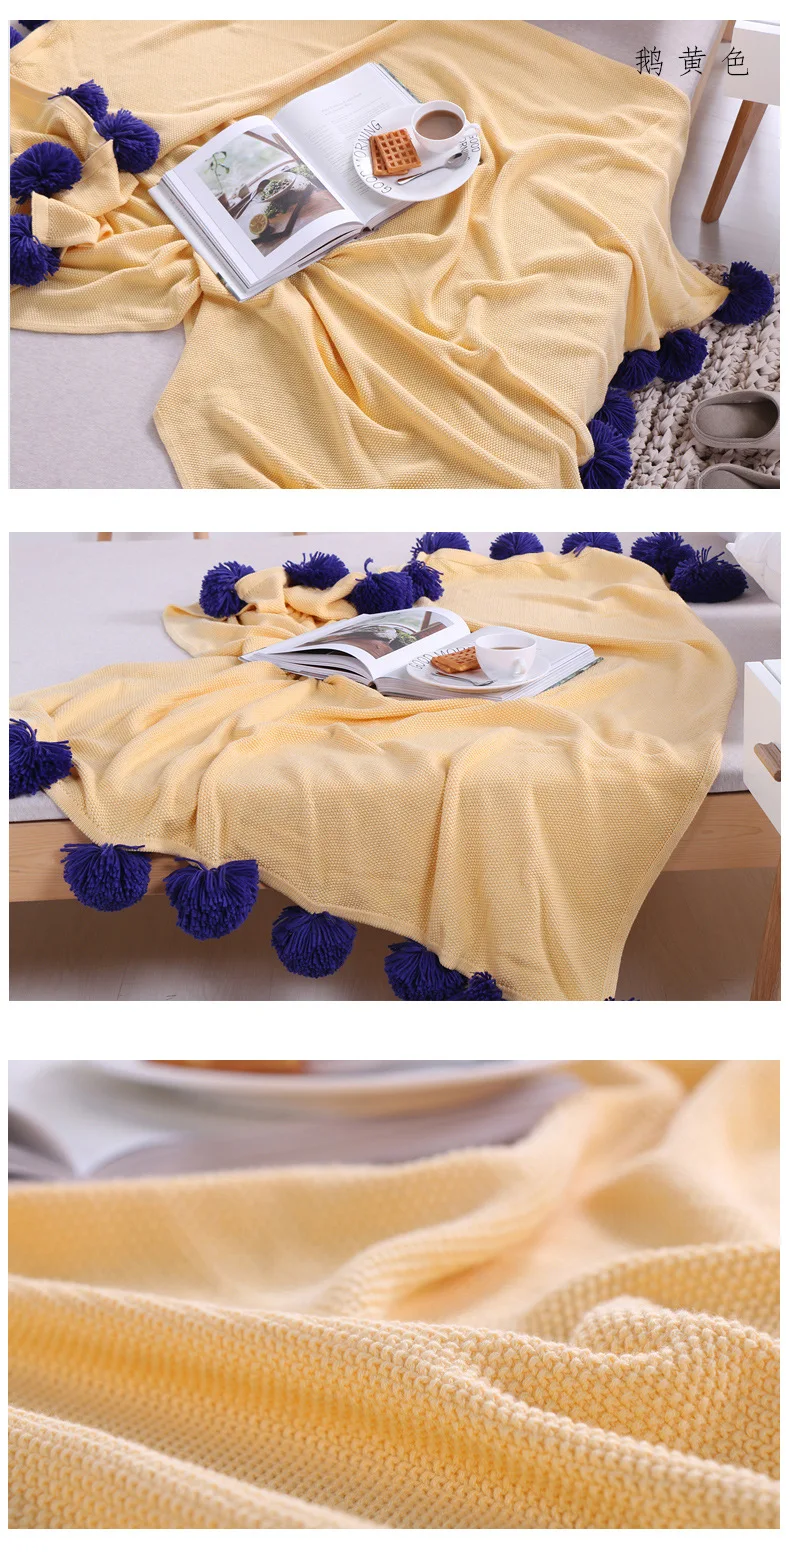 Eva Rueijing текстиль стиль Чистый хлопок в европейском стиле весна и летнее одеяло сон одеяло толстые пряжи INS Hot Sel